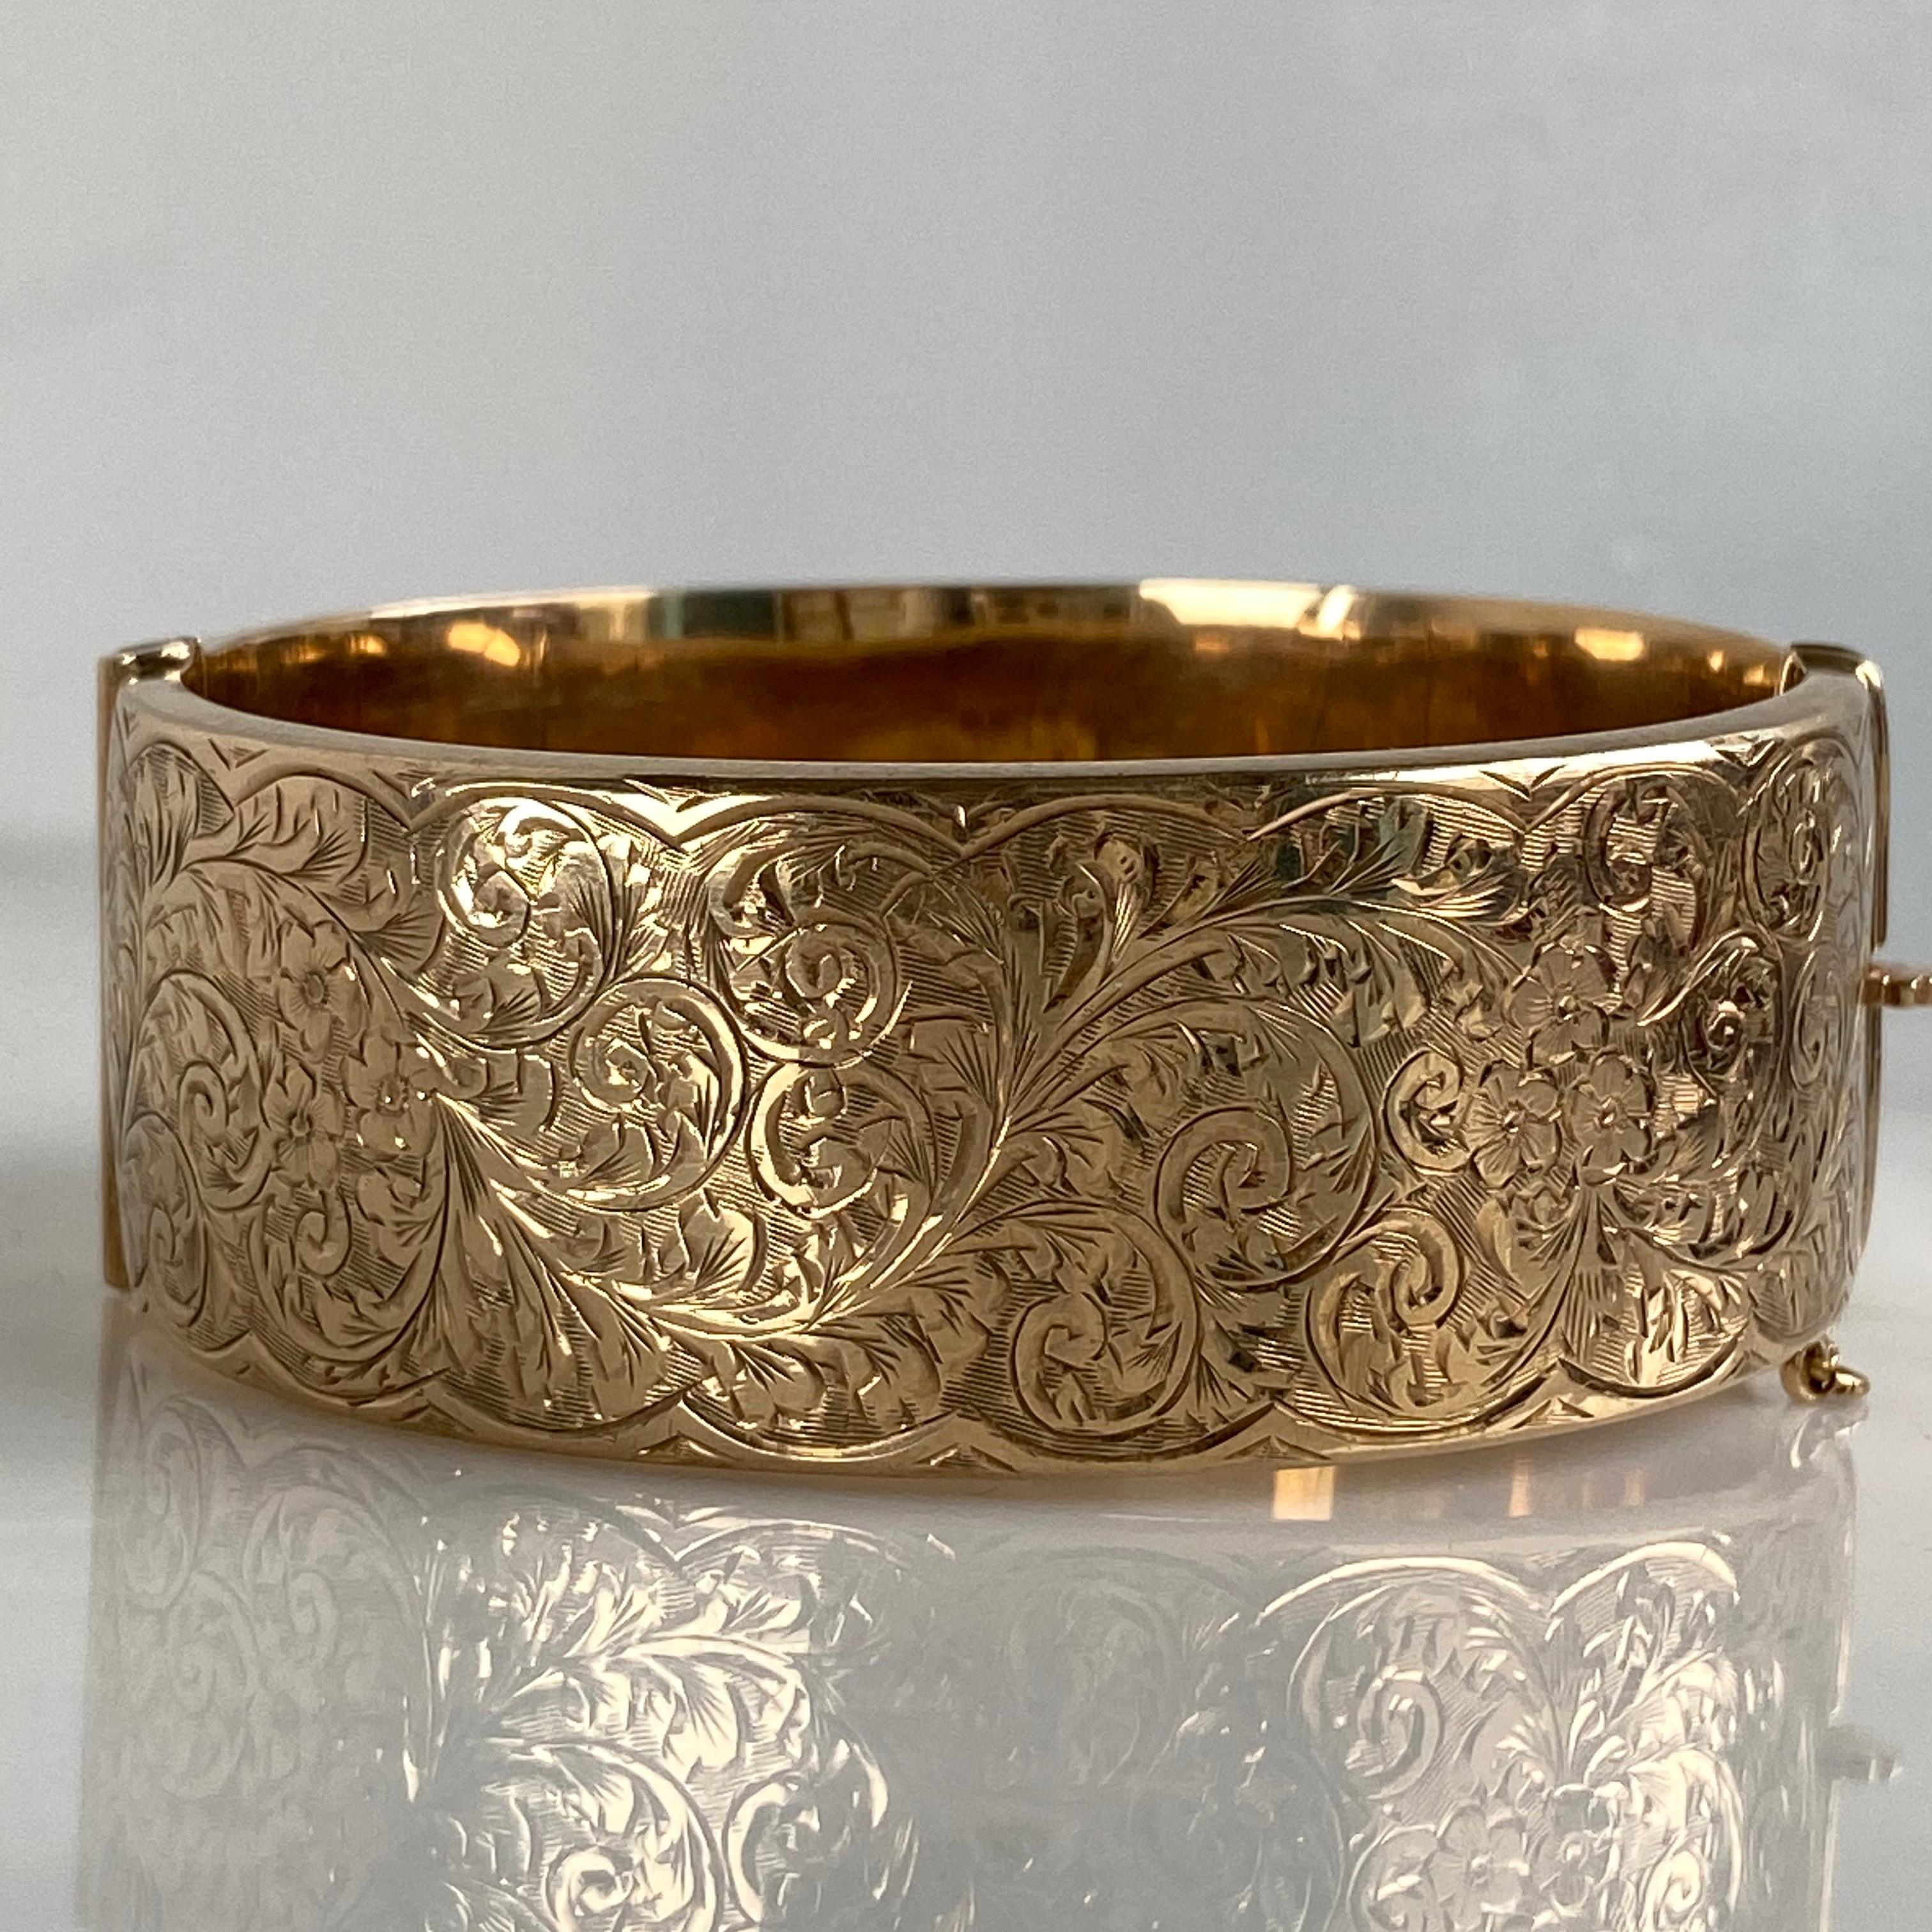 Einzelheiten:
Süßes viktorianisches Armband aus 9K Gold. Hübsches florales Gravurmuster auf der Vorderseite, glatte Rückseite aus Roségold. Er hat einen sehr sicheren Verschluss. Das Armband lässt sich weit und frei öffnen, was das Anlegen und